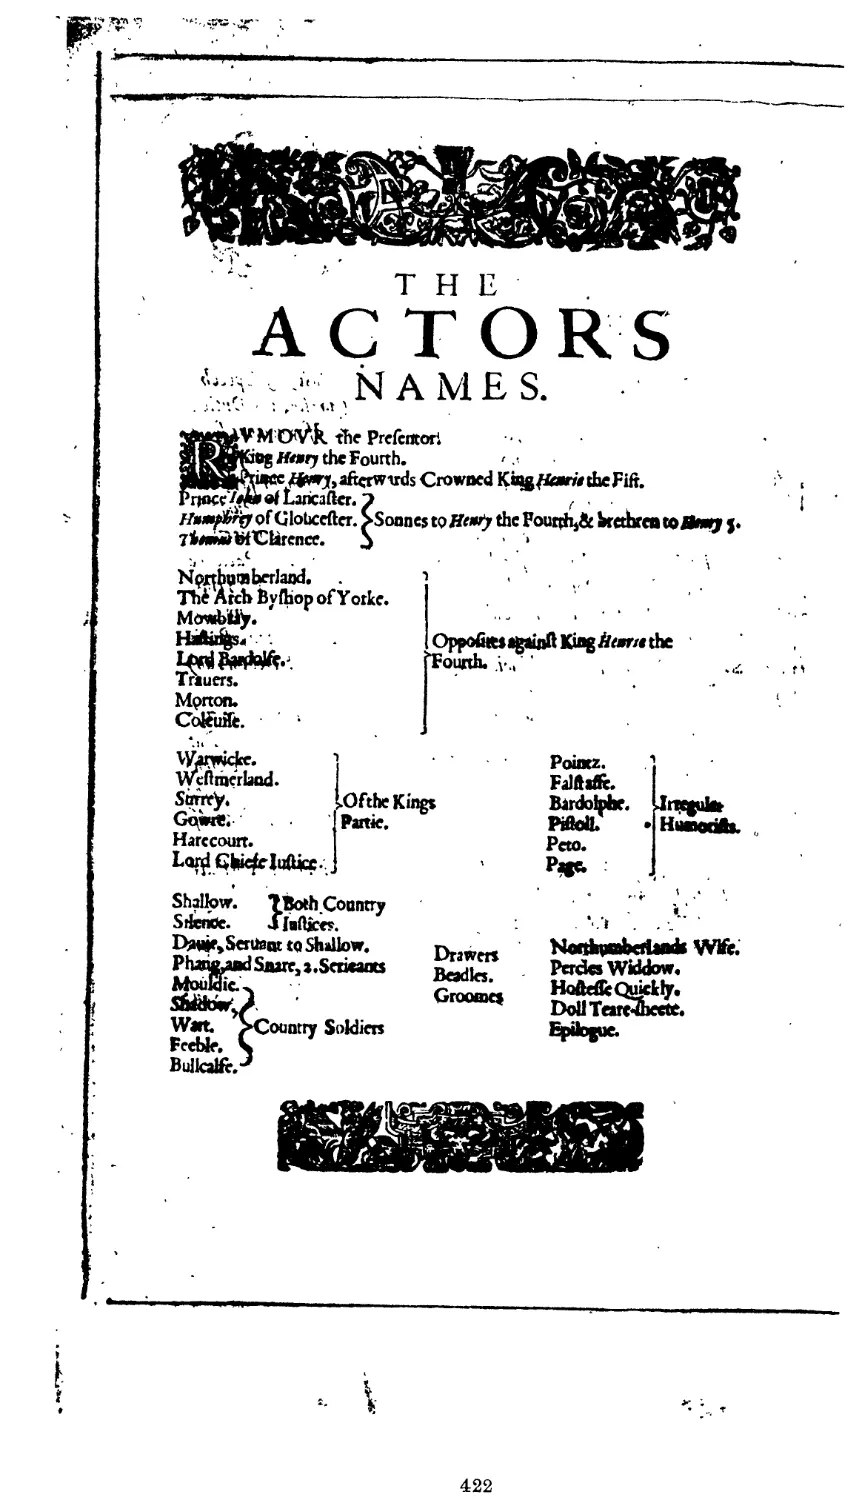 The Actors Names, p. 422